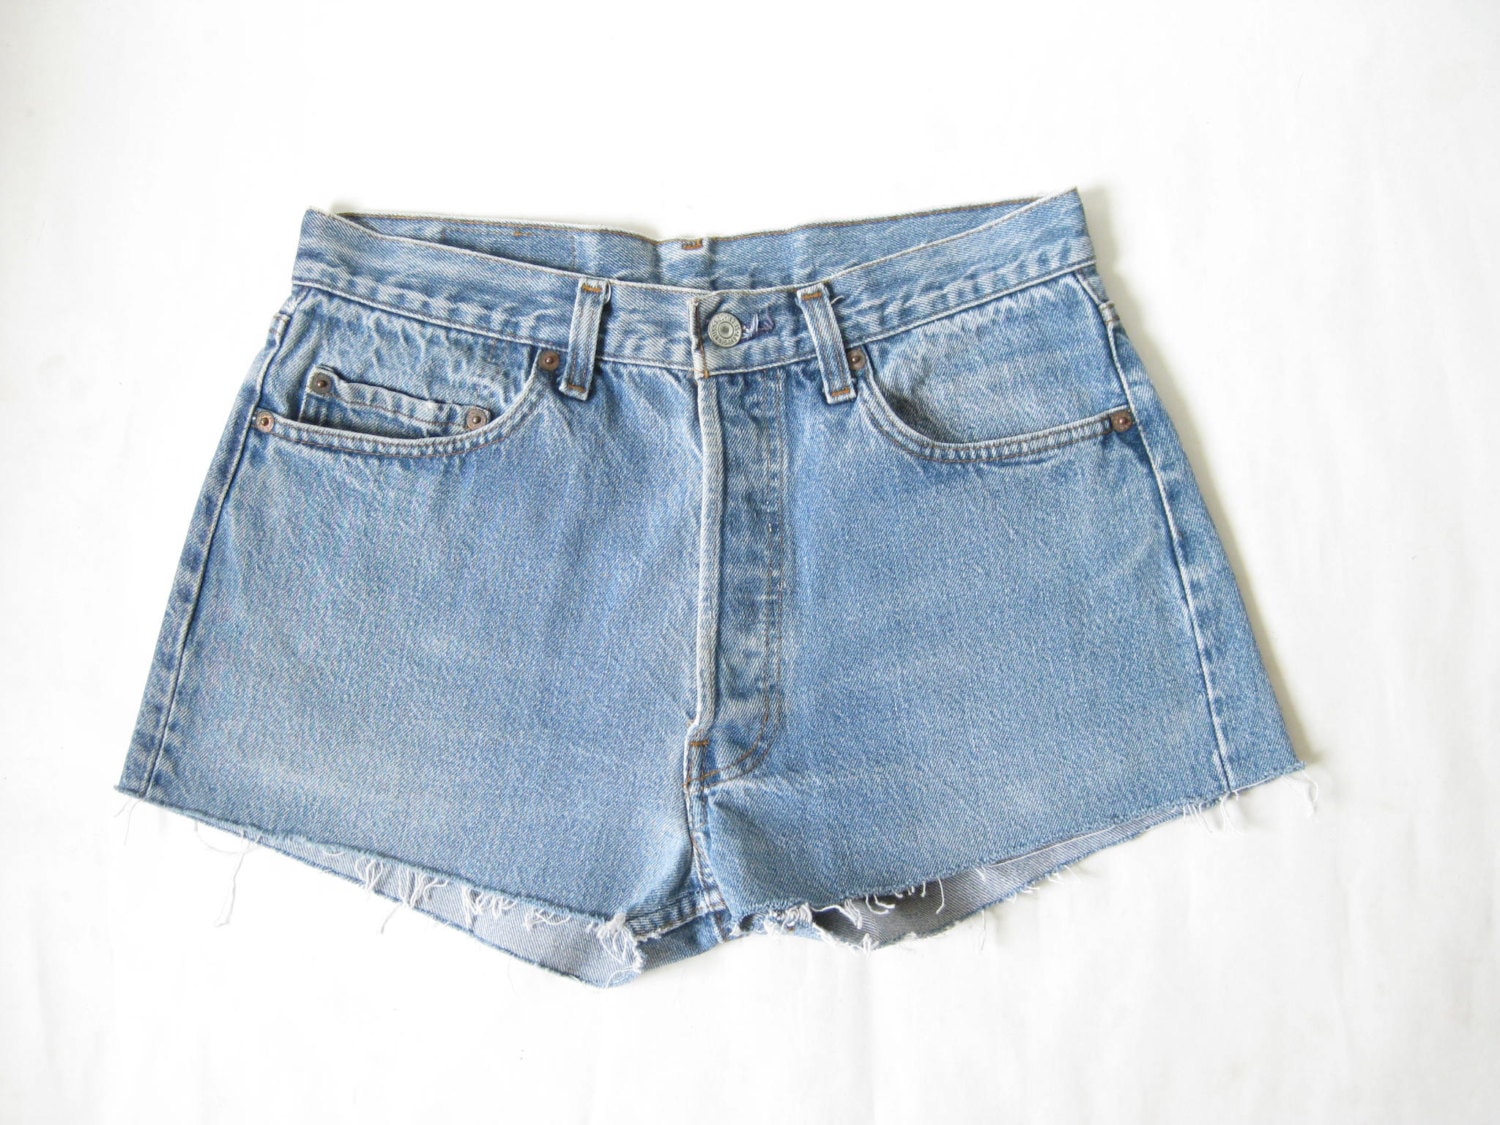 Vintage 80s LEVIS 501 Cut Off Shorts. Size 29